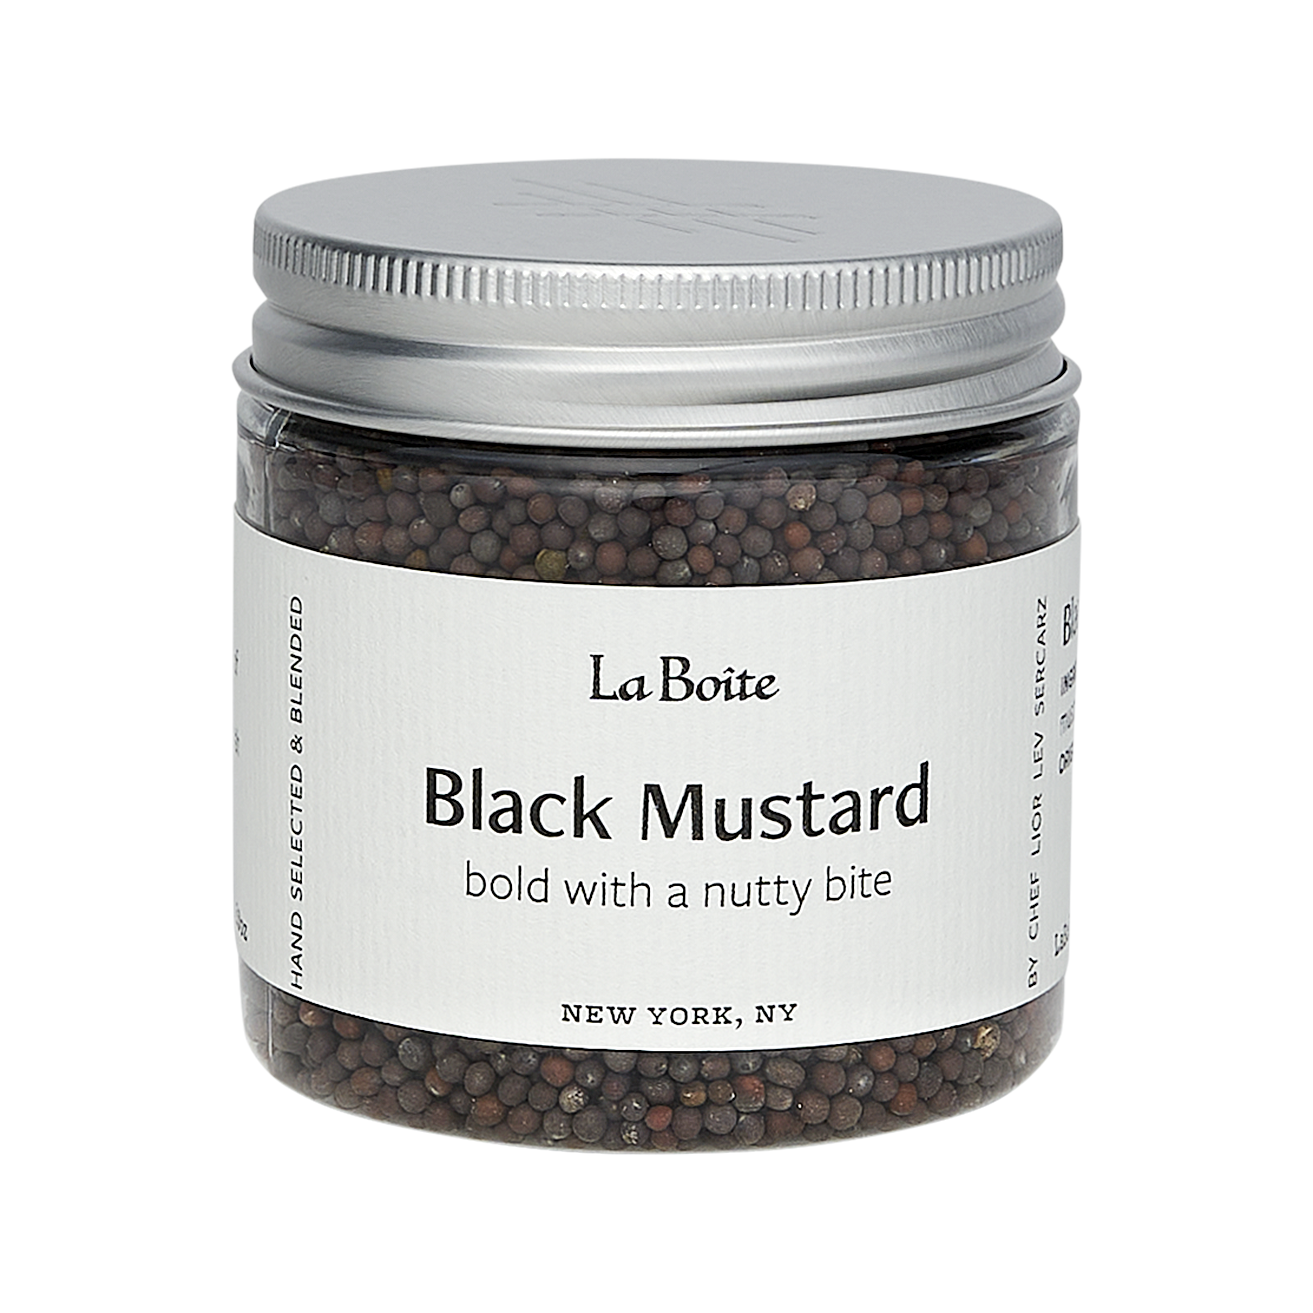 Black Mustard